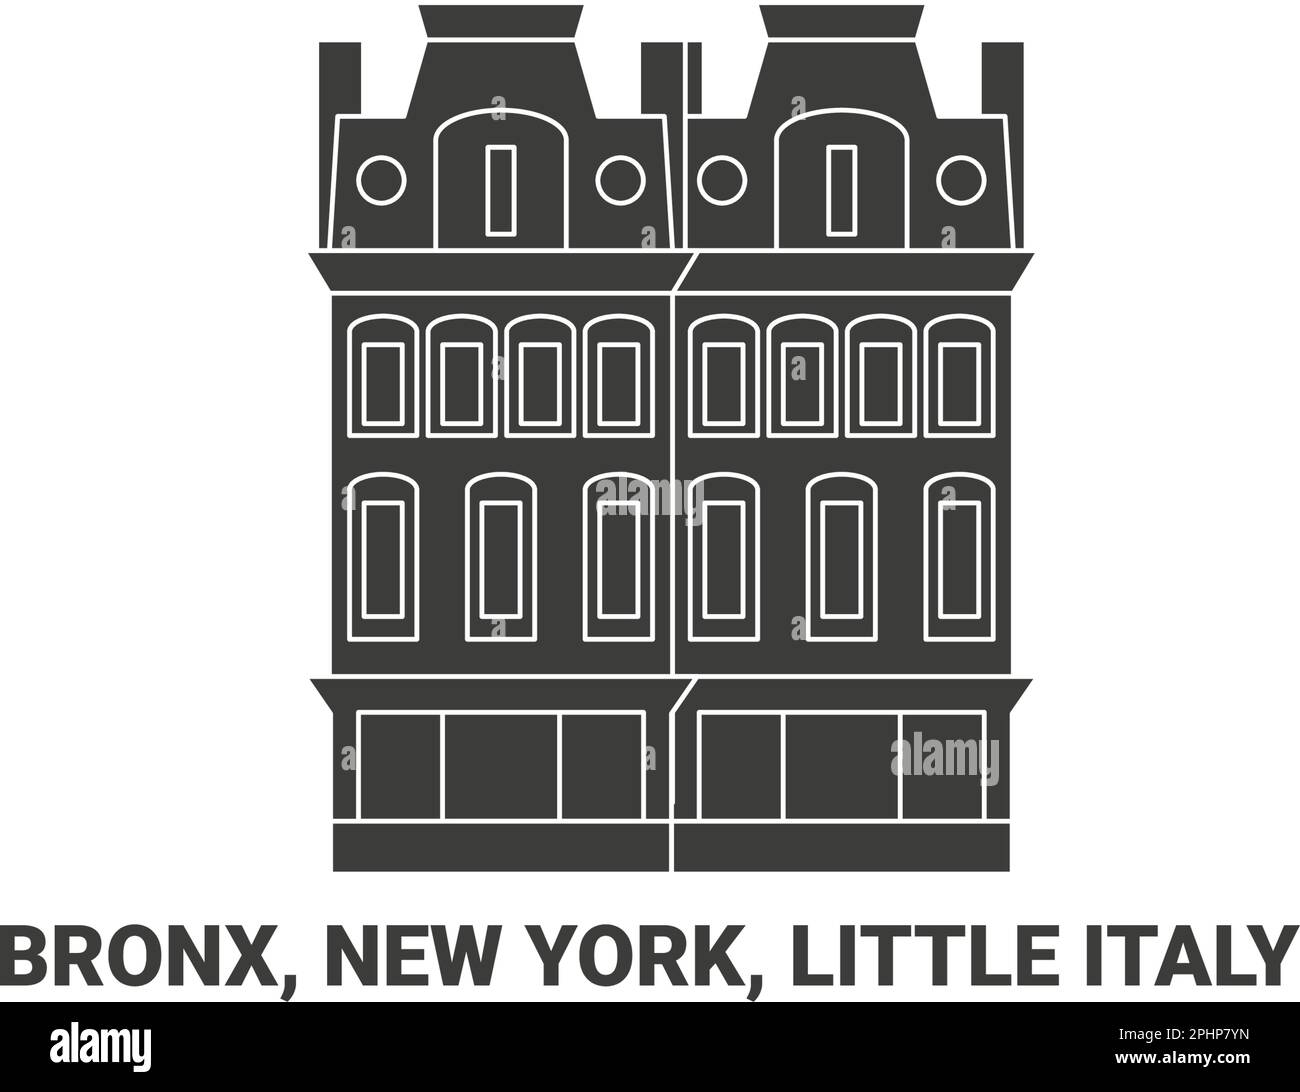 USA, Bronx, New York, Little Italy, Reise-Wahrzeichen-Vektordarstellung Stock Vektor